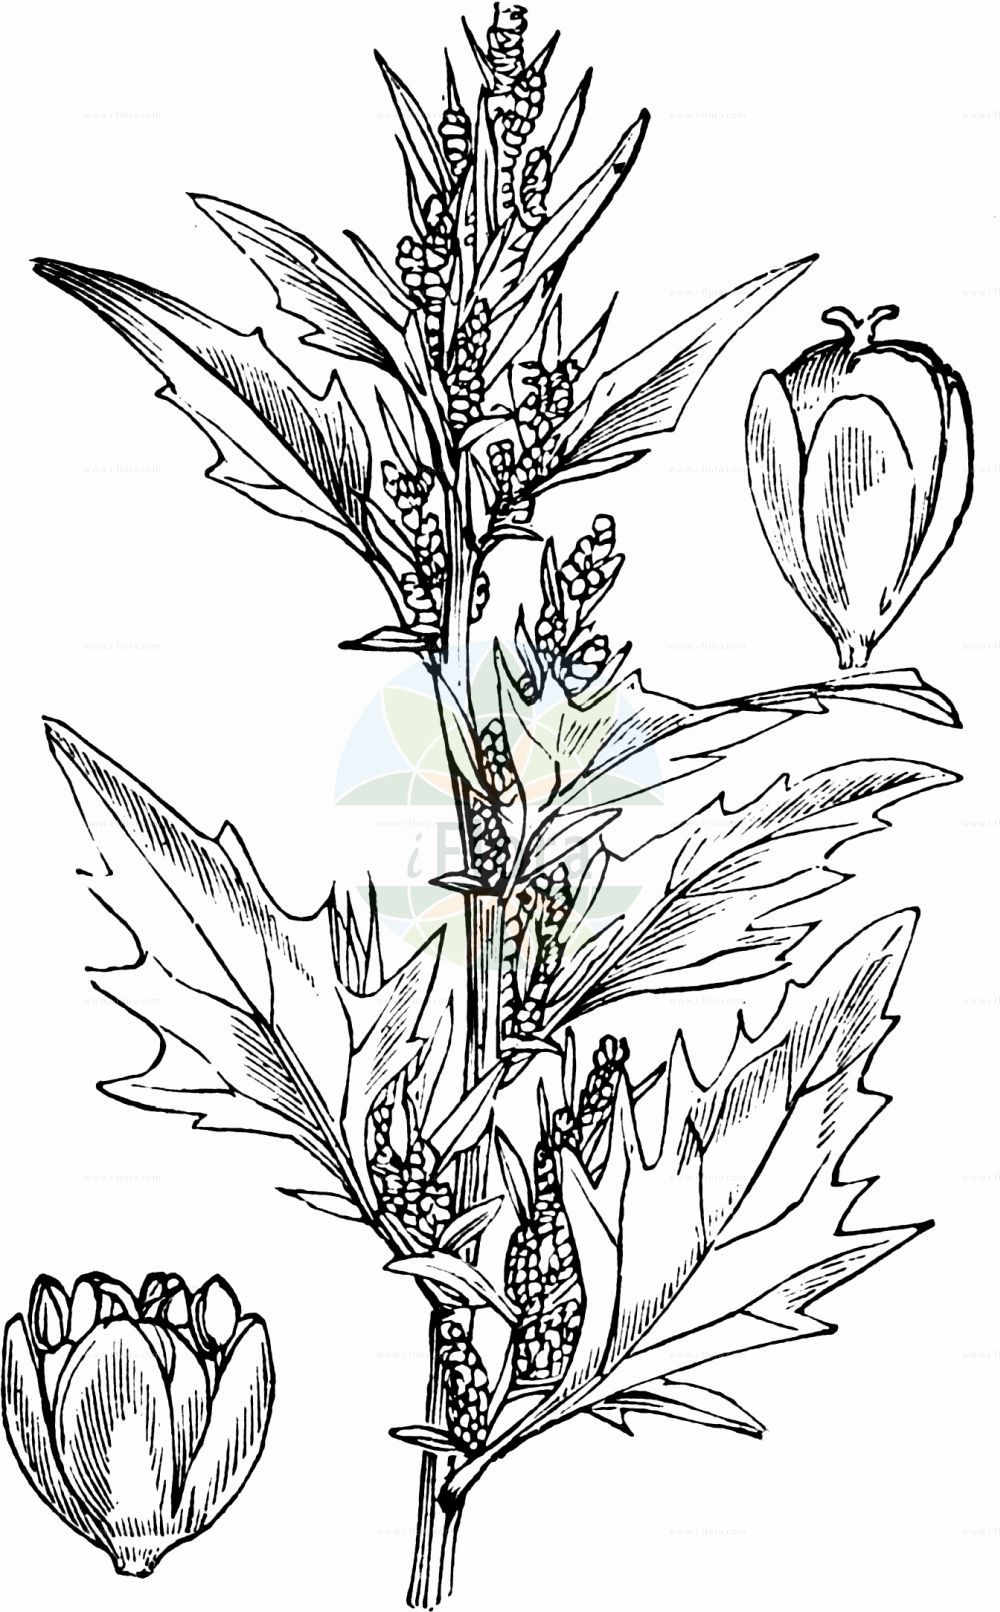 Historische Abbildung von Oxybasis rubra (Roter Gänsefuß - Red Goosefoot). Das Bild zeigt Blatt, Bluete, Frucht und Same. ---- Historical Drawing of Oxybasis rubra (Roter Gänsefuß - Red Goosefoot). The image is showing leaf, flower, fruit and seed.(Oxybasis rubra,Roter Gänsefuß,Red Goosefoot,Blitum rubrum,Chenopodium blitoides,Chenopodium rubrum,Oxybasis rubra,Roter Gaensefuss,Red Goosefoot,Coast Blite,Oxybasis,Amaranthaceae,Fuchsschwanzgewächse,Pigweed family,Blatt,Bluete,Frucht,Same,leaf,flower,fruit,seed,Fitch et al. (1880))